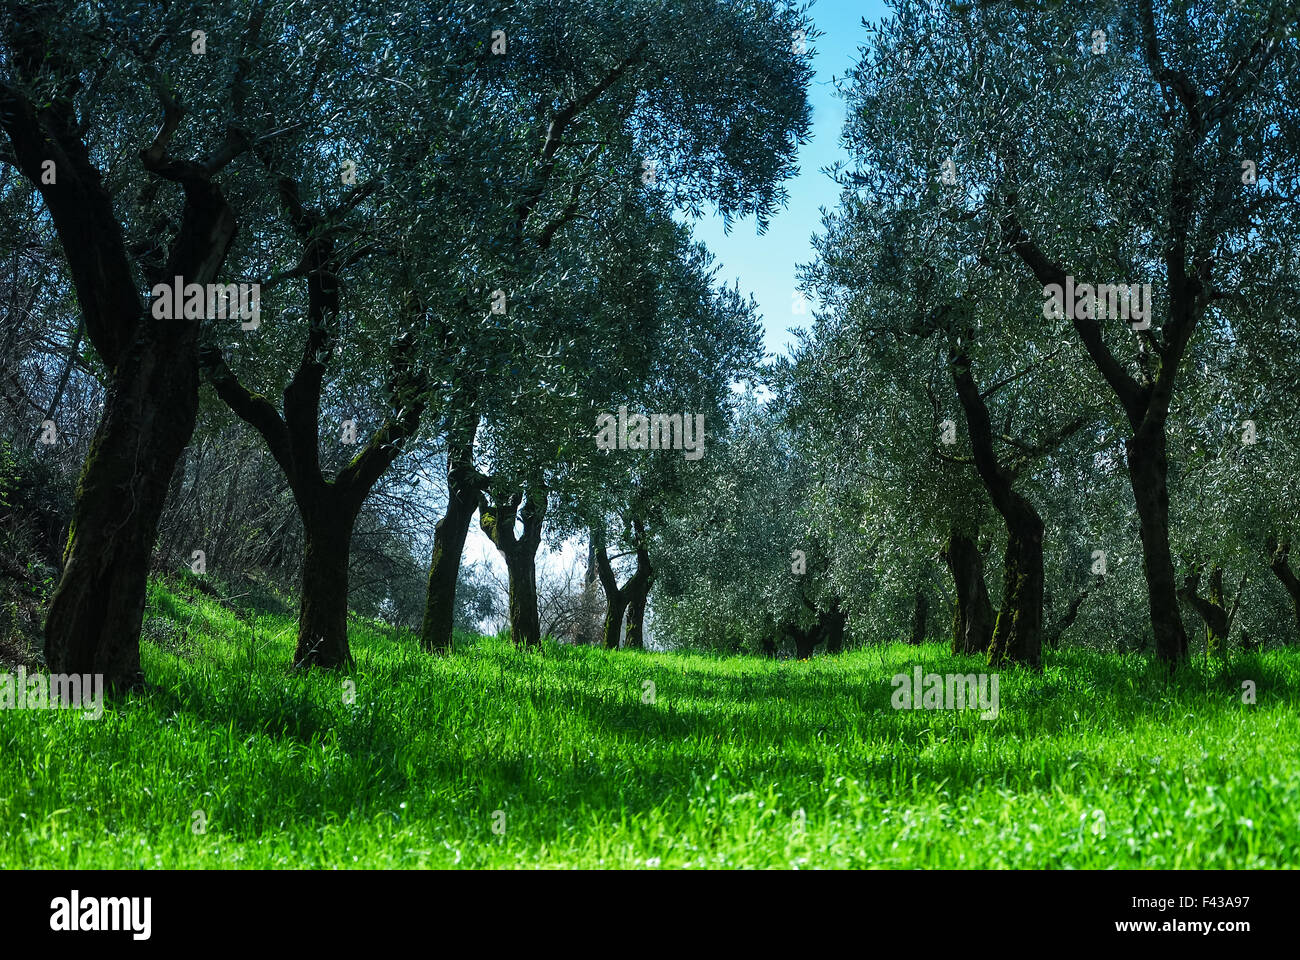 Olive grove in spring Stock Photo